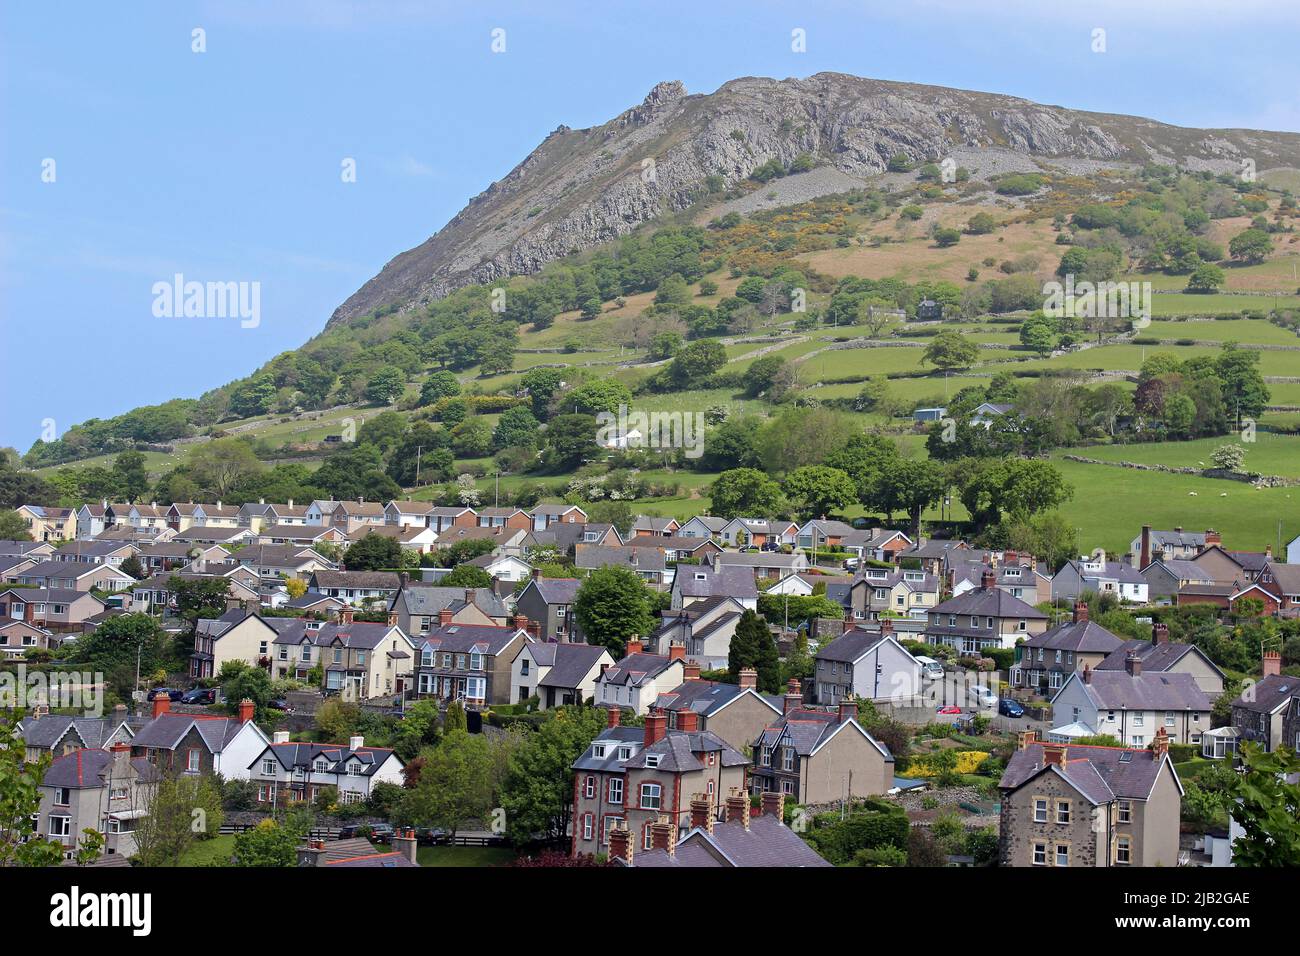 Llanfairfechan with Penmaenmawr Mountain in distance, Wales, UK Stock Photo